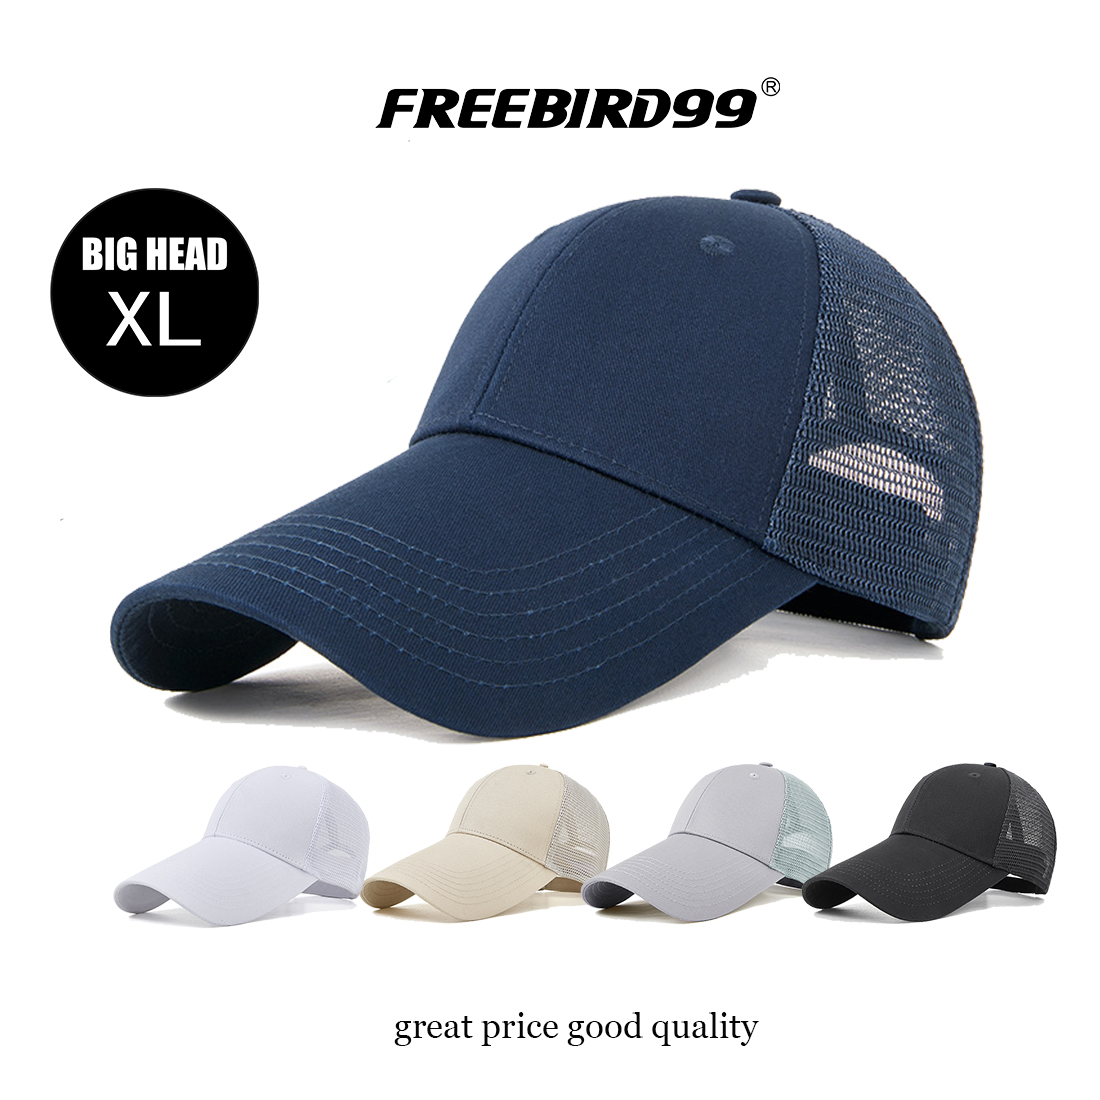 Big Head Long Brim Half Mesh Hat #2224 - FREEBIRD99 online hats shop